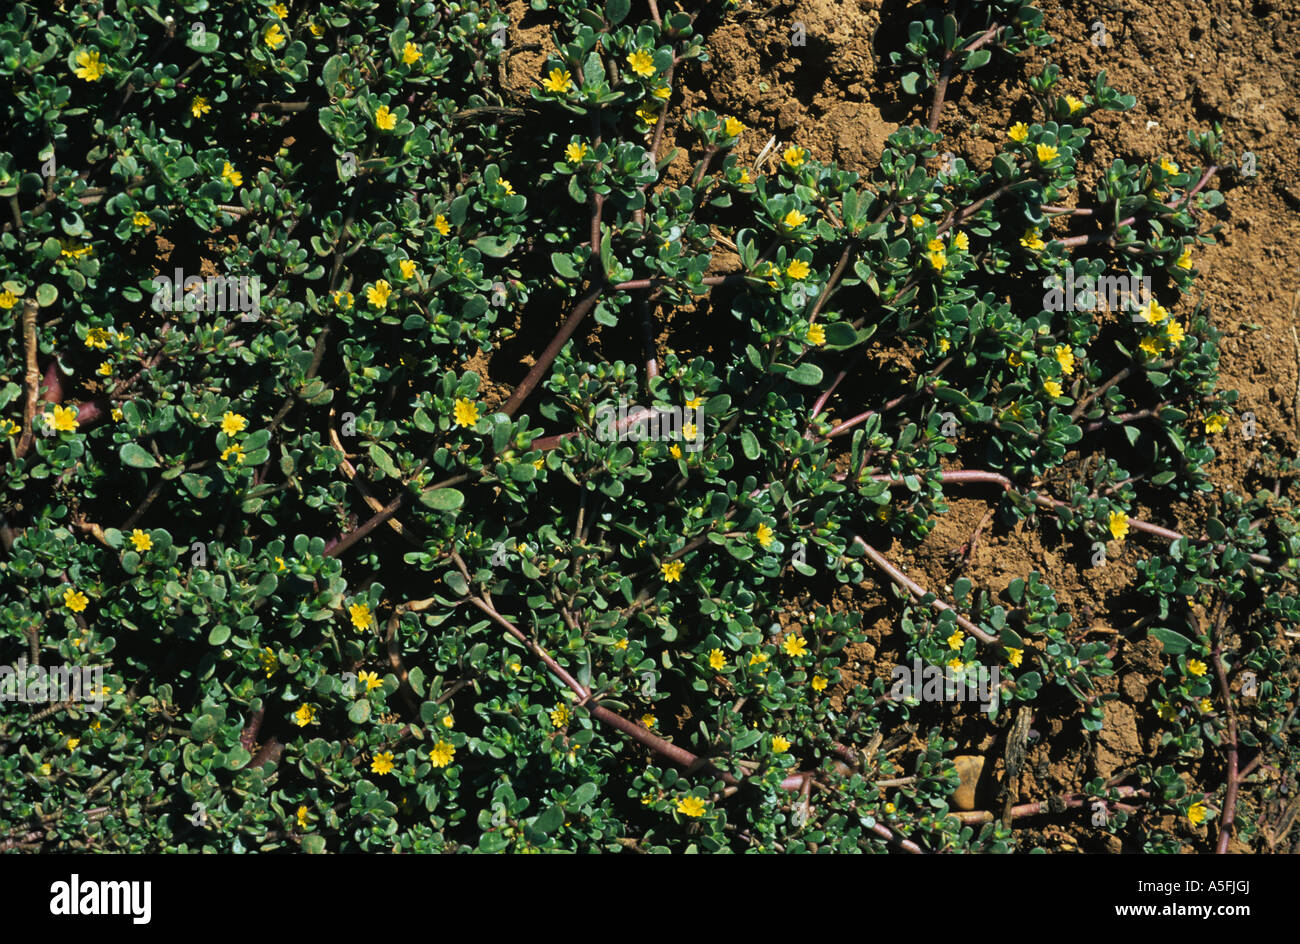 Purslane Portulaca oleraceae flowering prostrate weed plant Spain Stock Photo